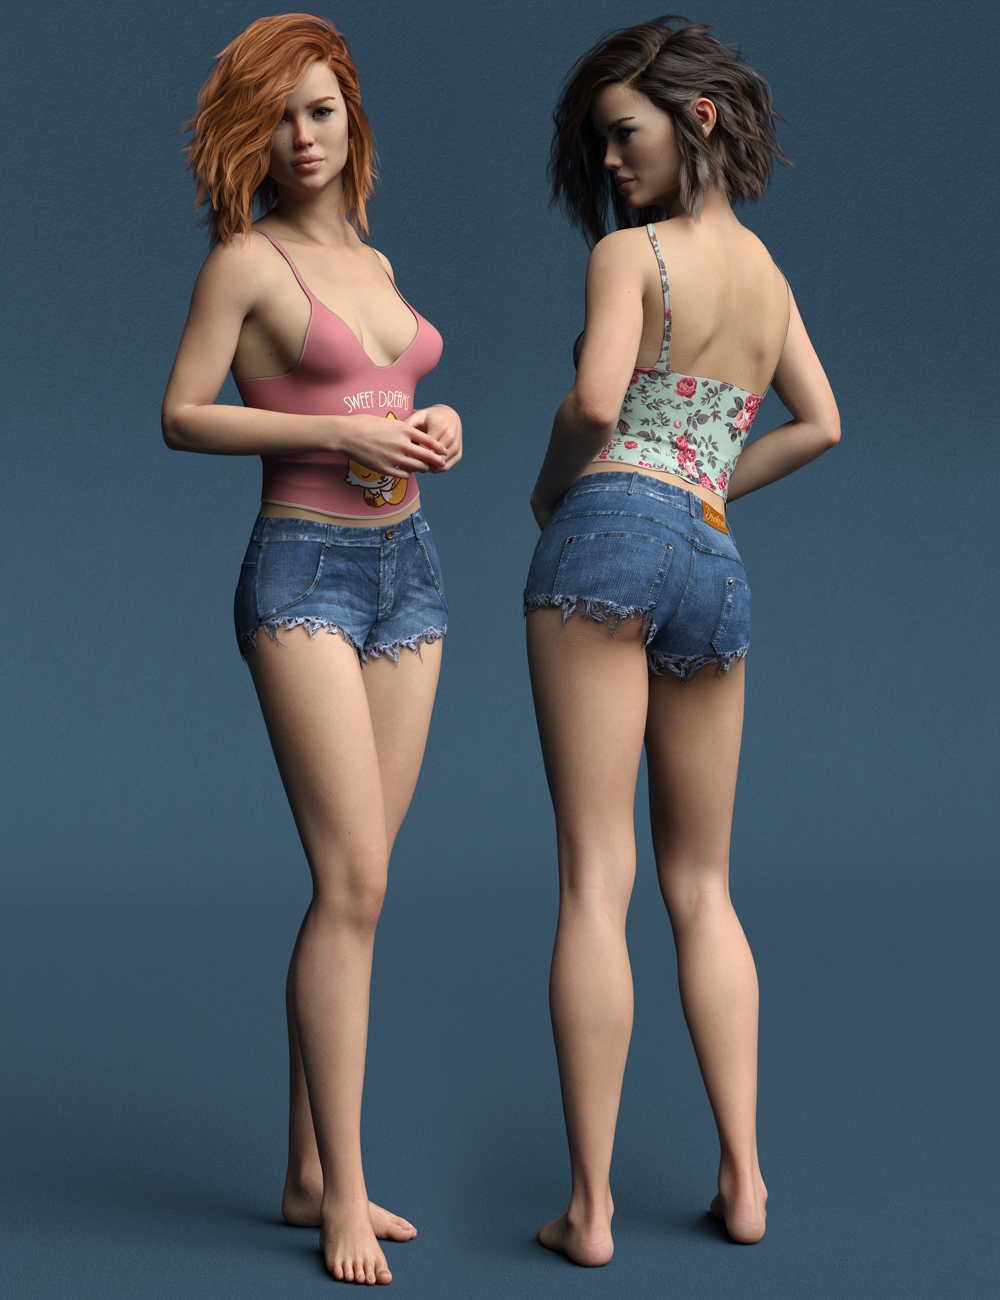 Audrey HD for Bridget 8 by: Emrys, 3D Models by Daz 3D